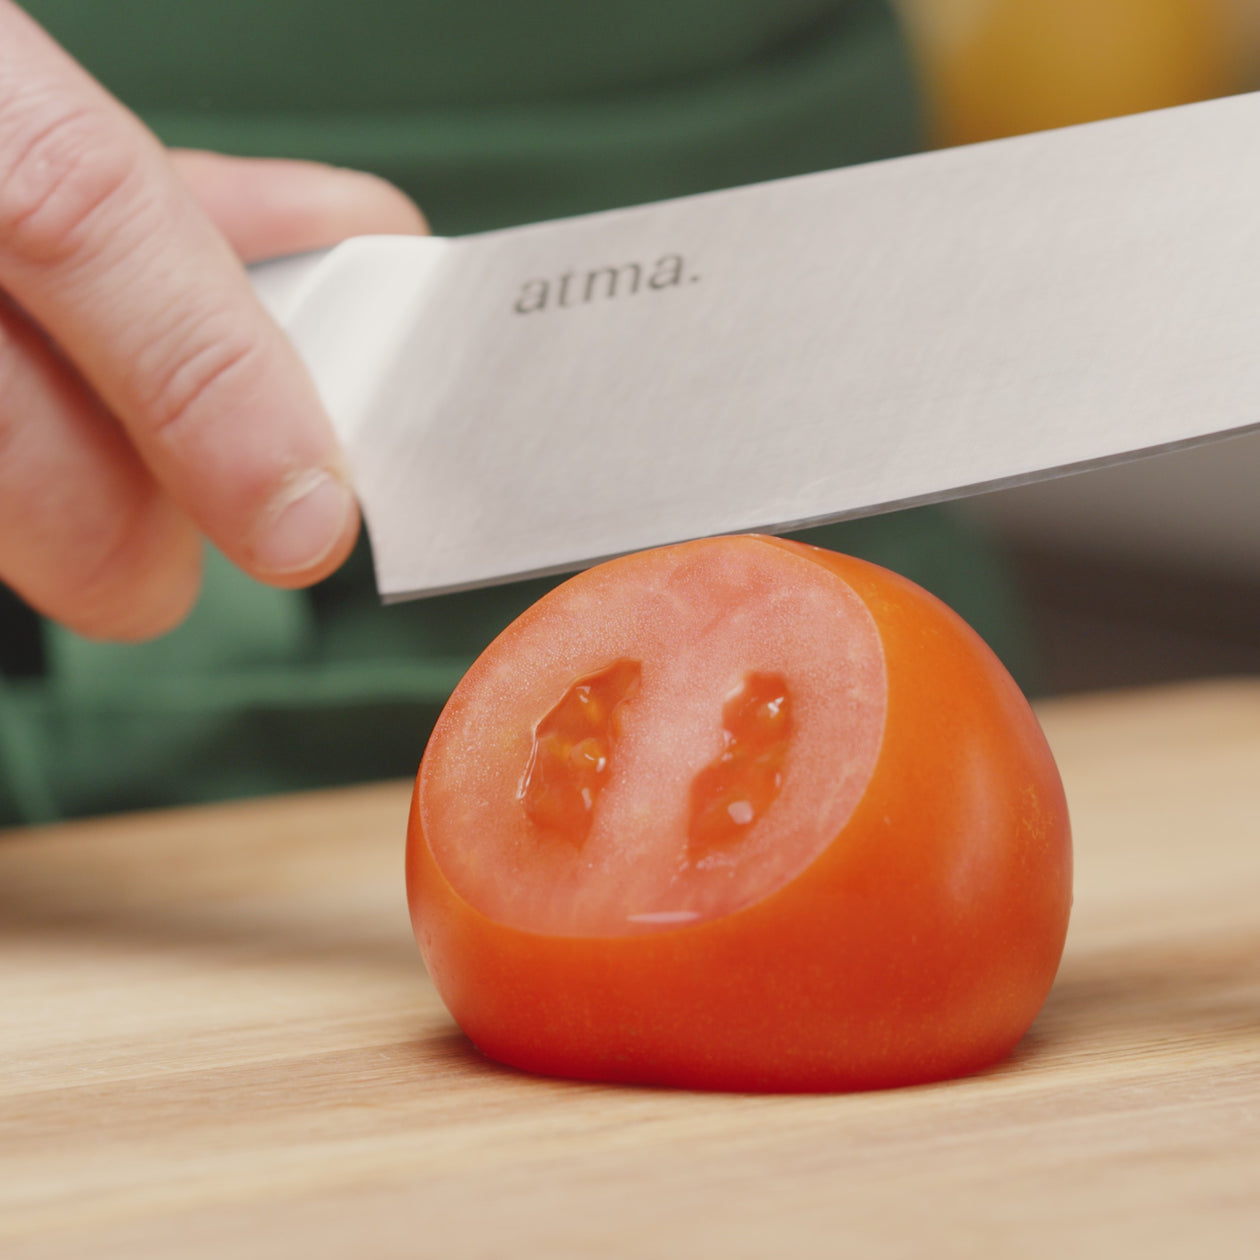 Couteau cranté Nova rouge Arcos - Meilleur du Chef